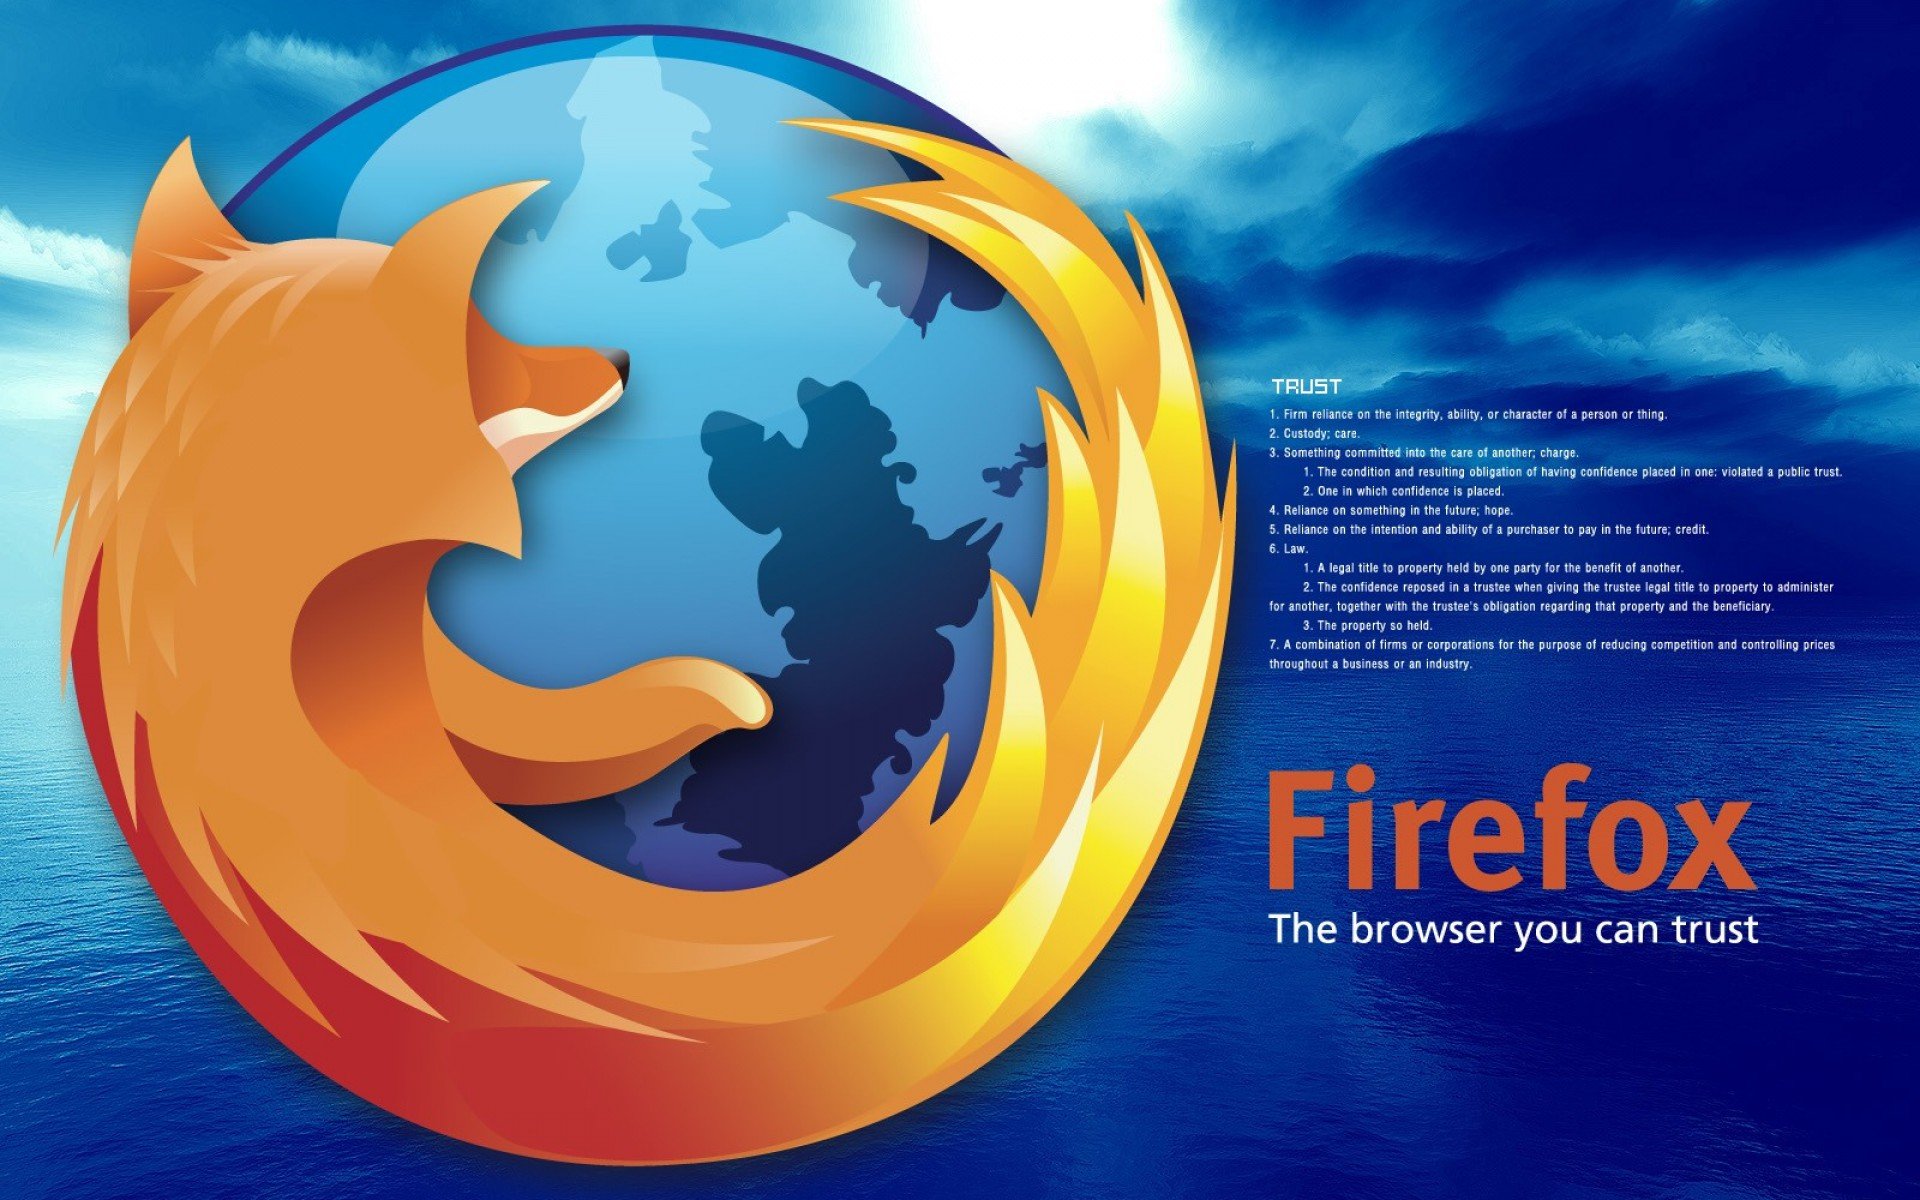 Firefox Puter Fire Fox Logo Poster Wallpaper Background